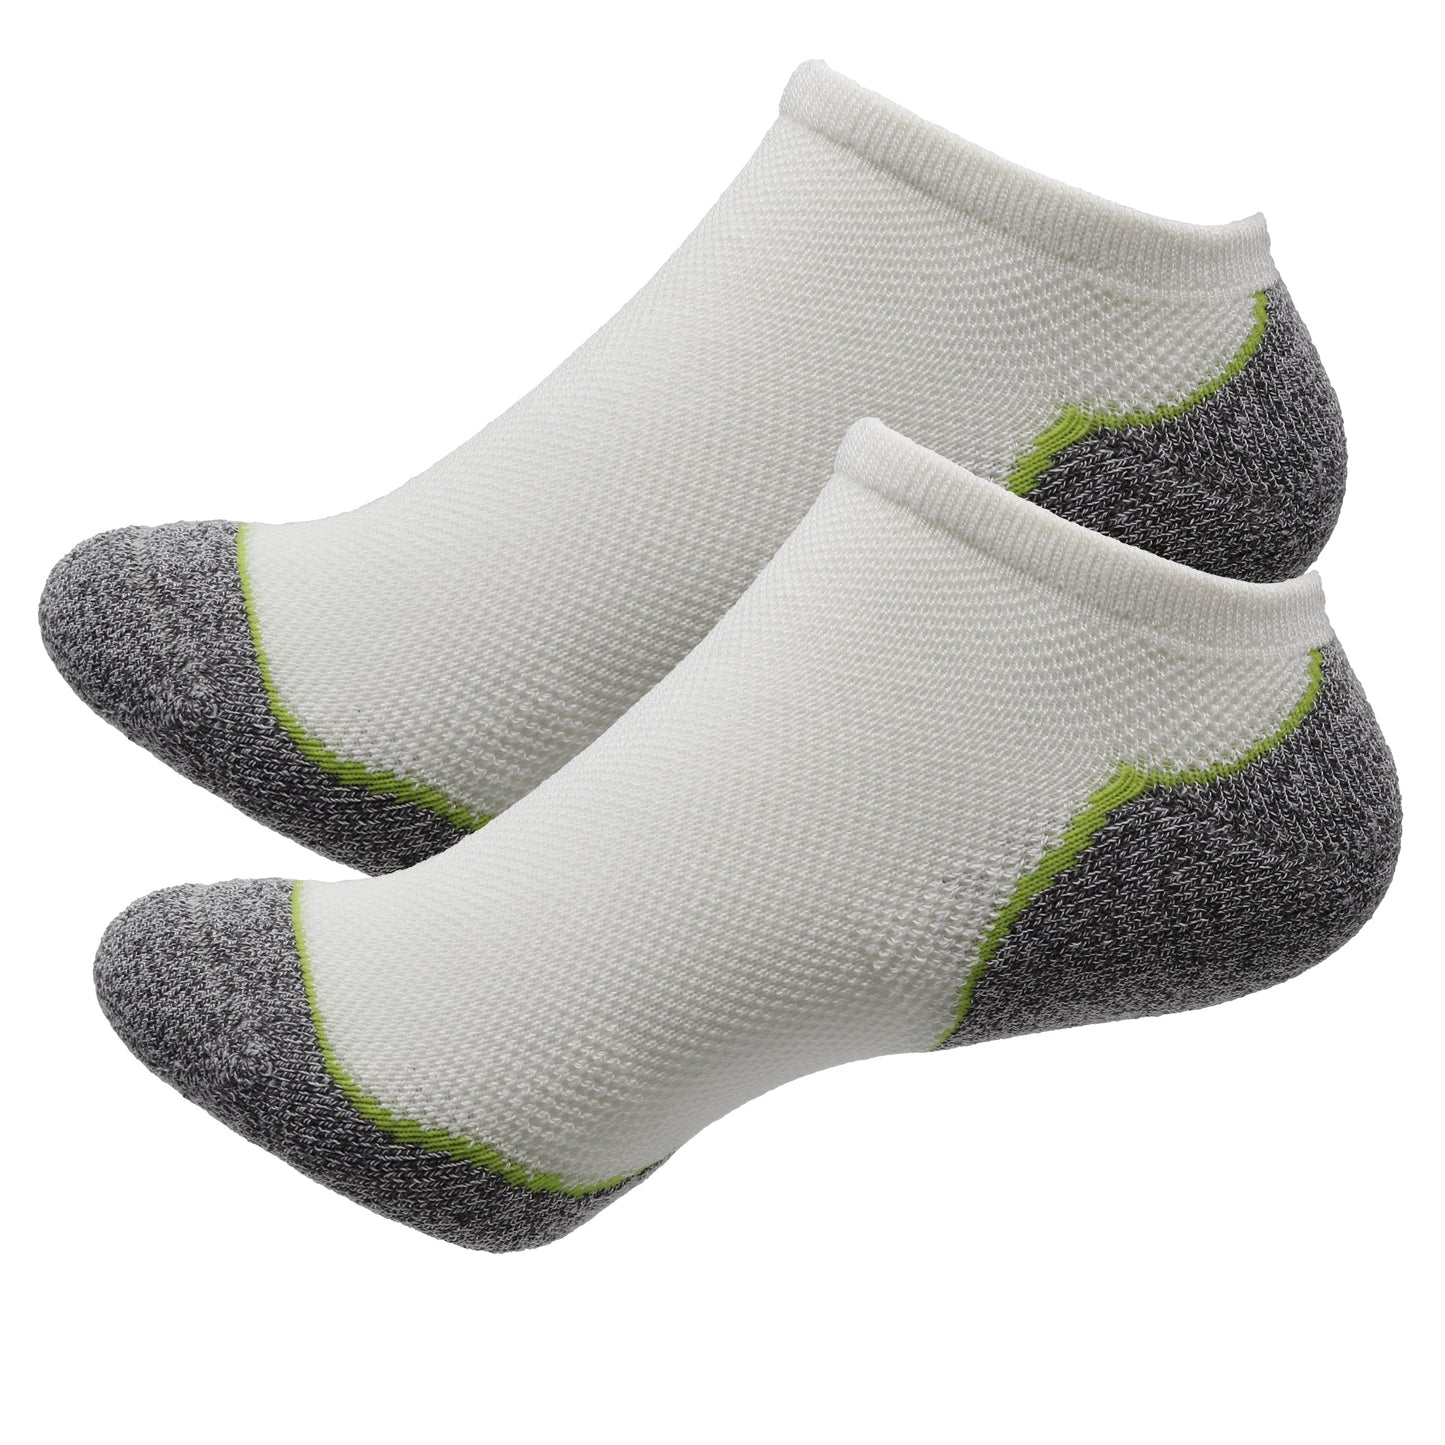 dry feet socks socks for dry feet moisturizing socks